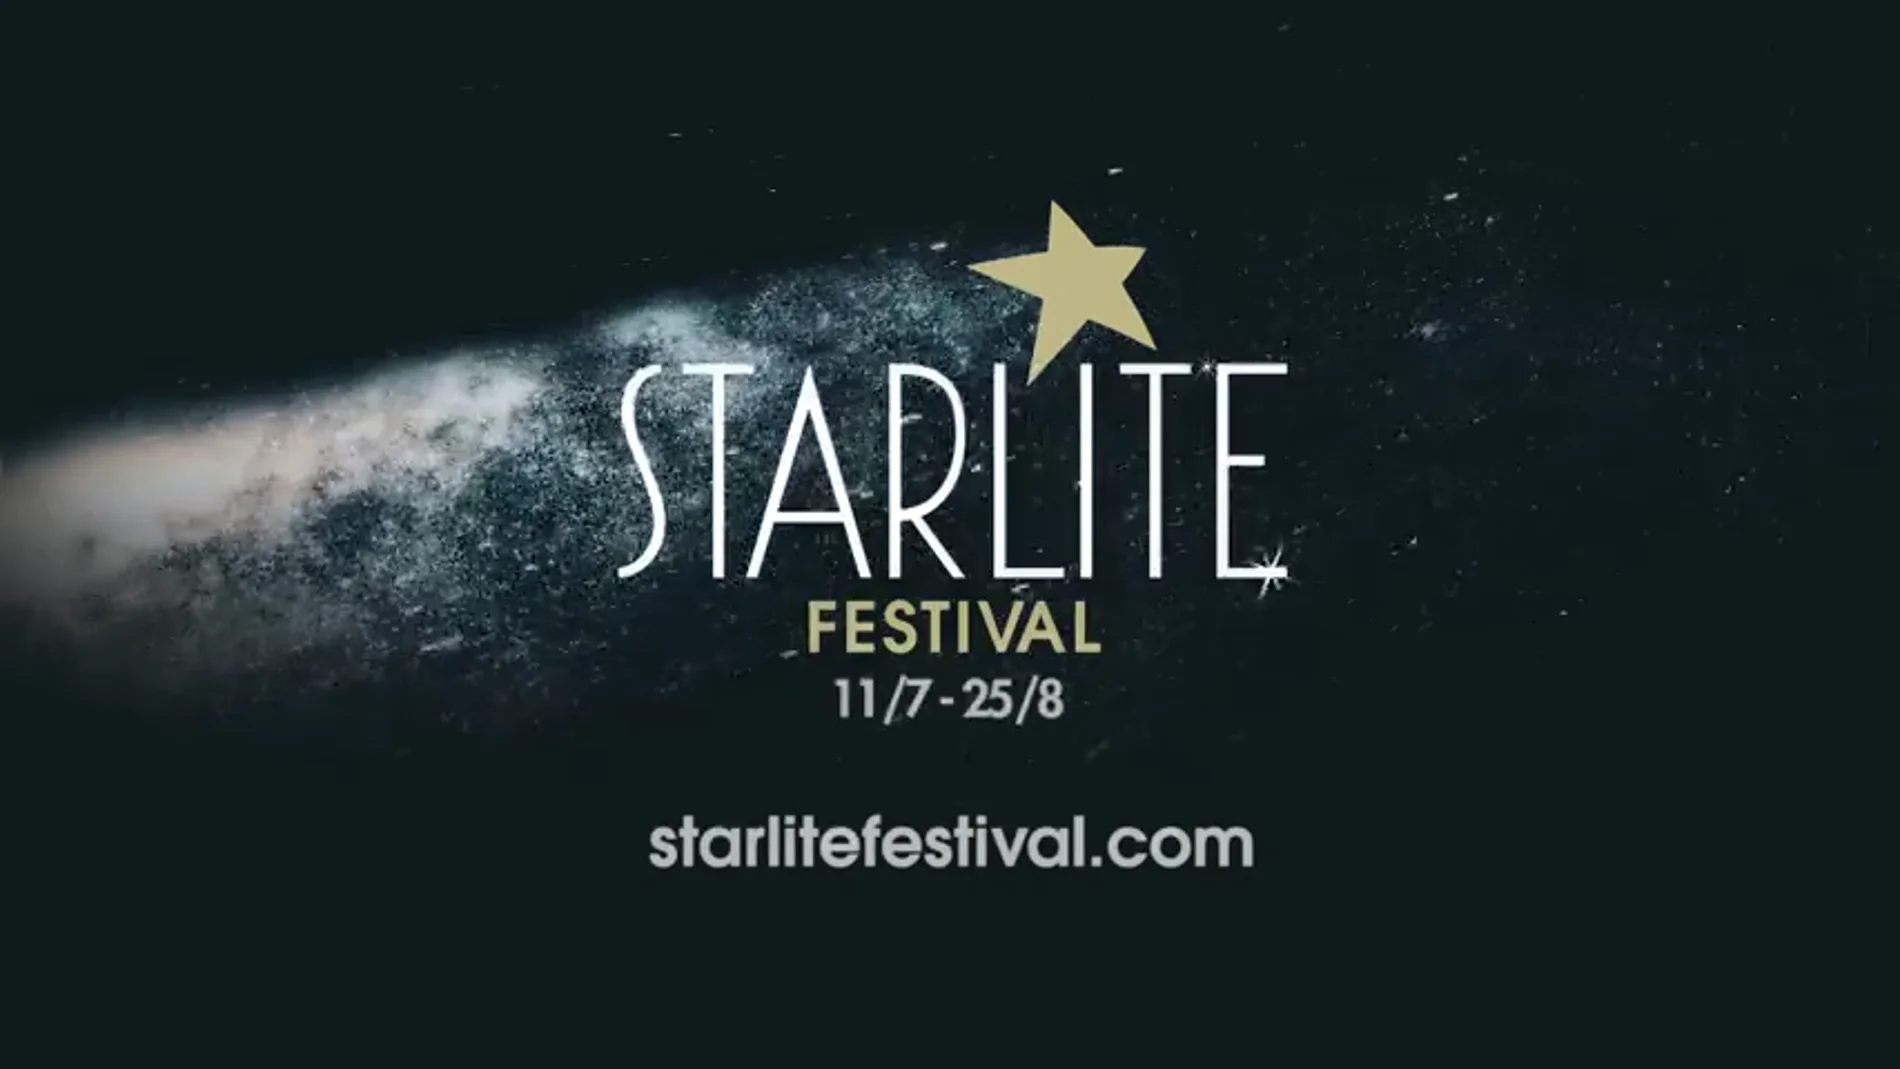 <p>El festival Starlite vuelva a acercar las estrellas a Marbella</p>